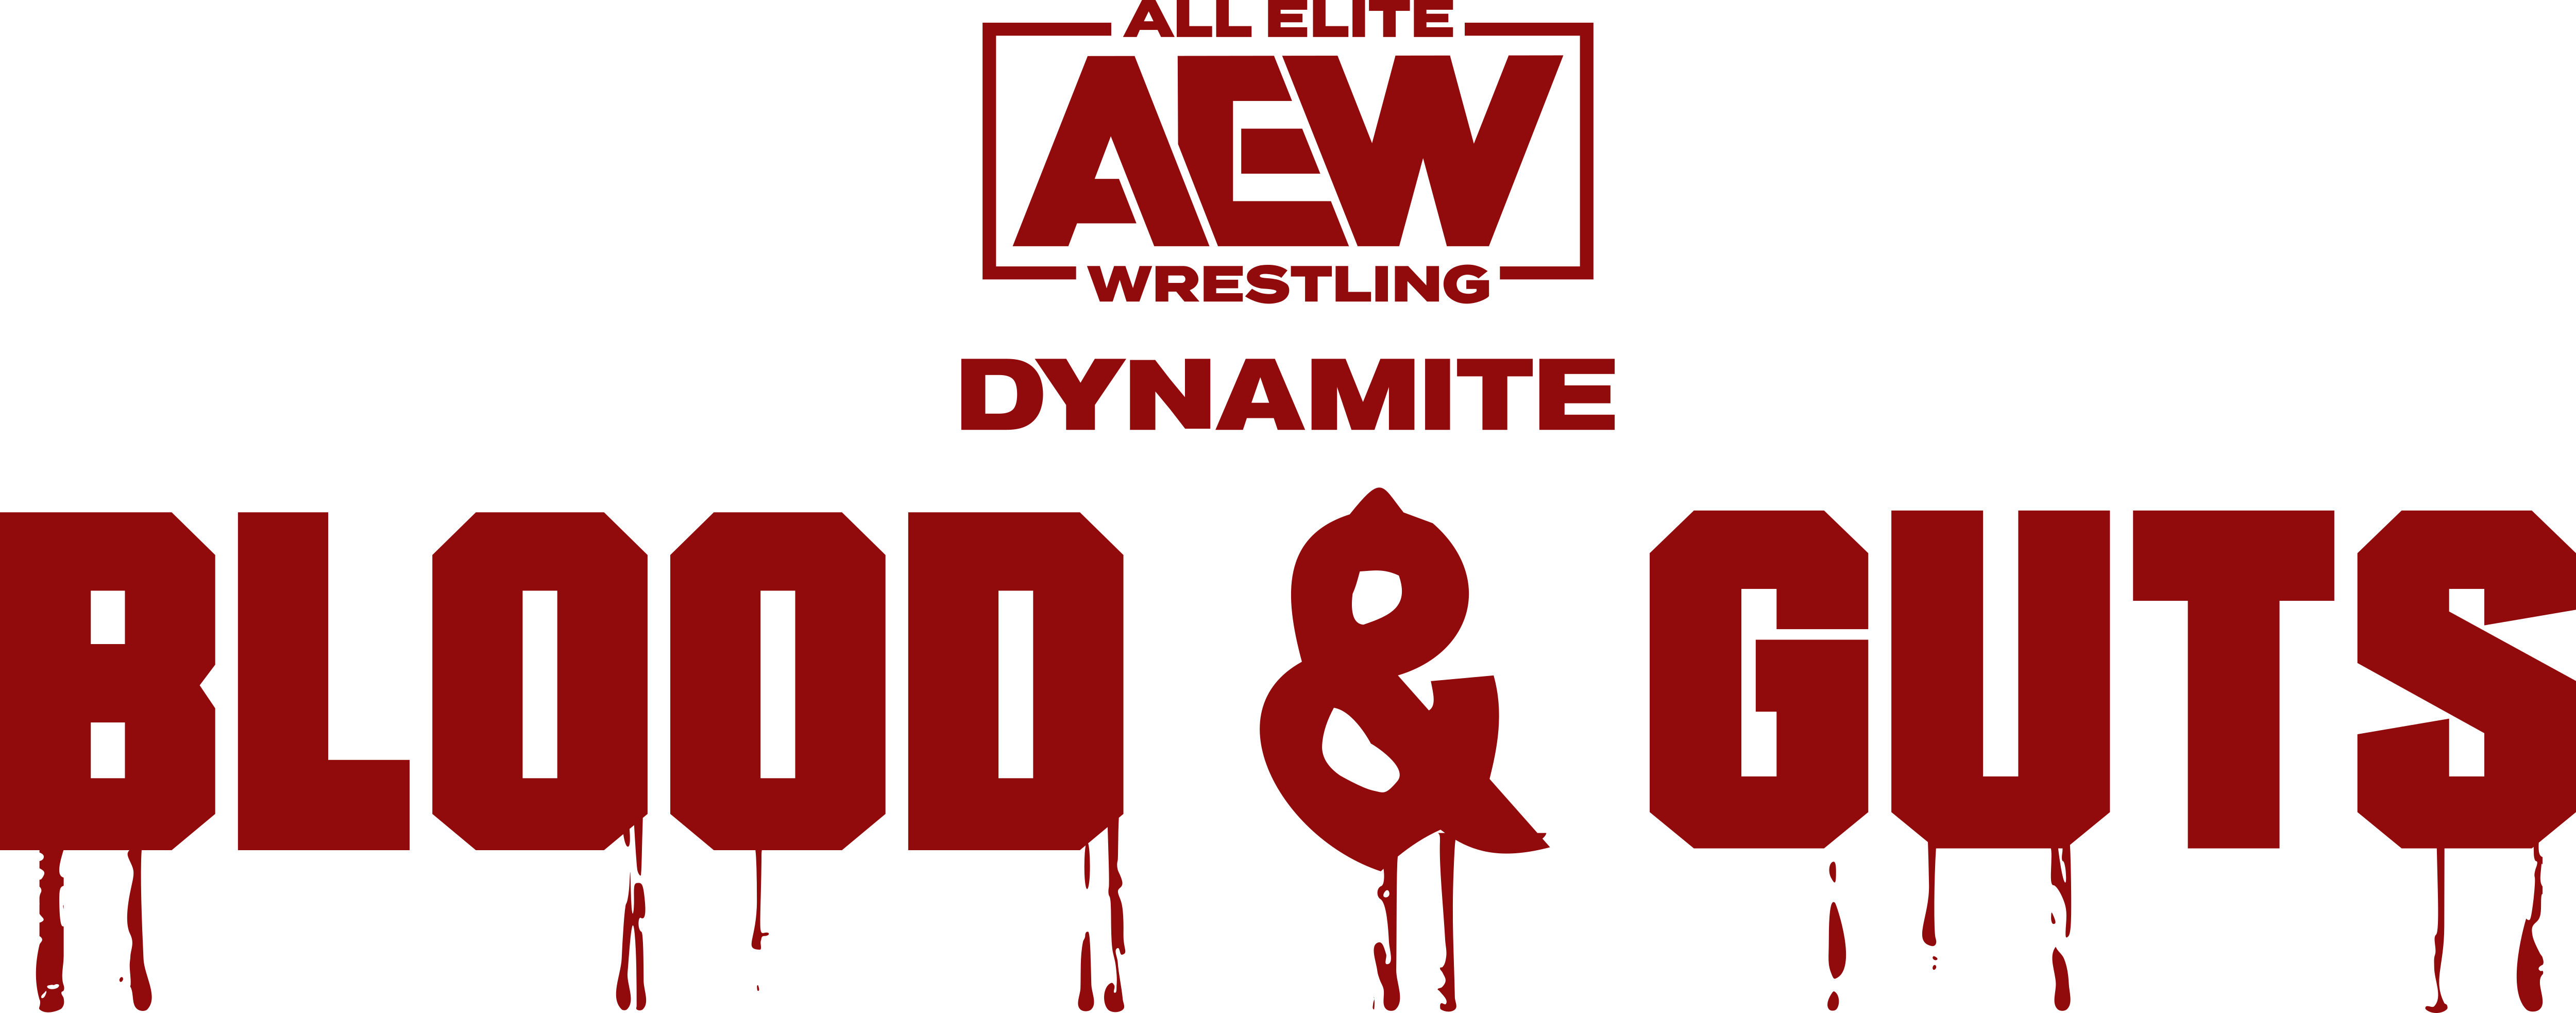 AEW Blood & Guts Full Show Ddwjtl8-c3b1335f-ec65-4362-972b-7cdef530e18a.png?token=eyJ0eXAiOiJKV1QiLCJhbGciOiJIUzI1NiJ9.eyJzdWIiOiJ1cm46YXBwOjdlMGQxODg5ODIyNjQzNzNhNWYwZDQxNWVhMGQyNmUwIiwiaXNzIjoidXJuOmFwcDo3ZTBkMTg4OTgyMjY0MzczYTVmMGQ0MTVlYTBkMjZlMCIsIm9iaiI6W1t7InBhdGgiOiJcL2ZcLzVlMmIzNjc4LTkyYjEtNDdhOC05MTE3LWJmNjQyYTVmODQ4MVwvZGR3anRsOC1jM2IxMzM1Zi1lYzY1LTQzNjItOTcyYi03Y2RlZjUzMGUxOGEucG5nIn1dXSwiYXVkIjpbInVybjpzZXJ2aWNlOmZpbGUuZG93bmxvYWQiXX0